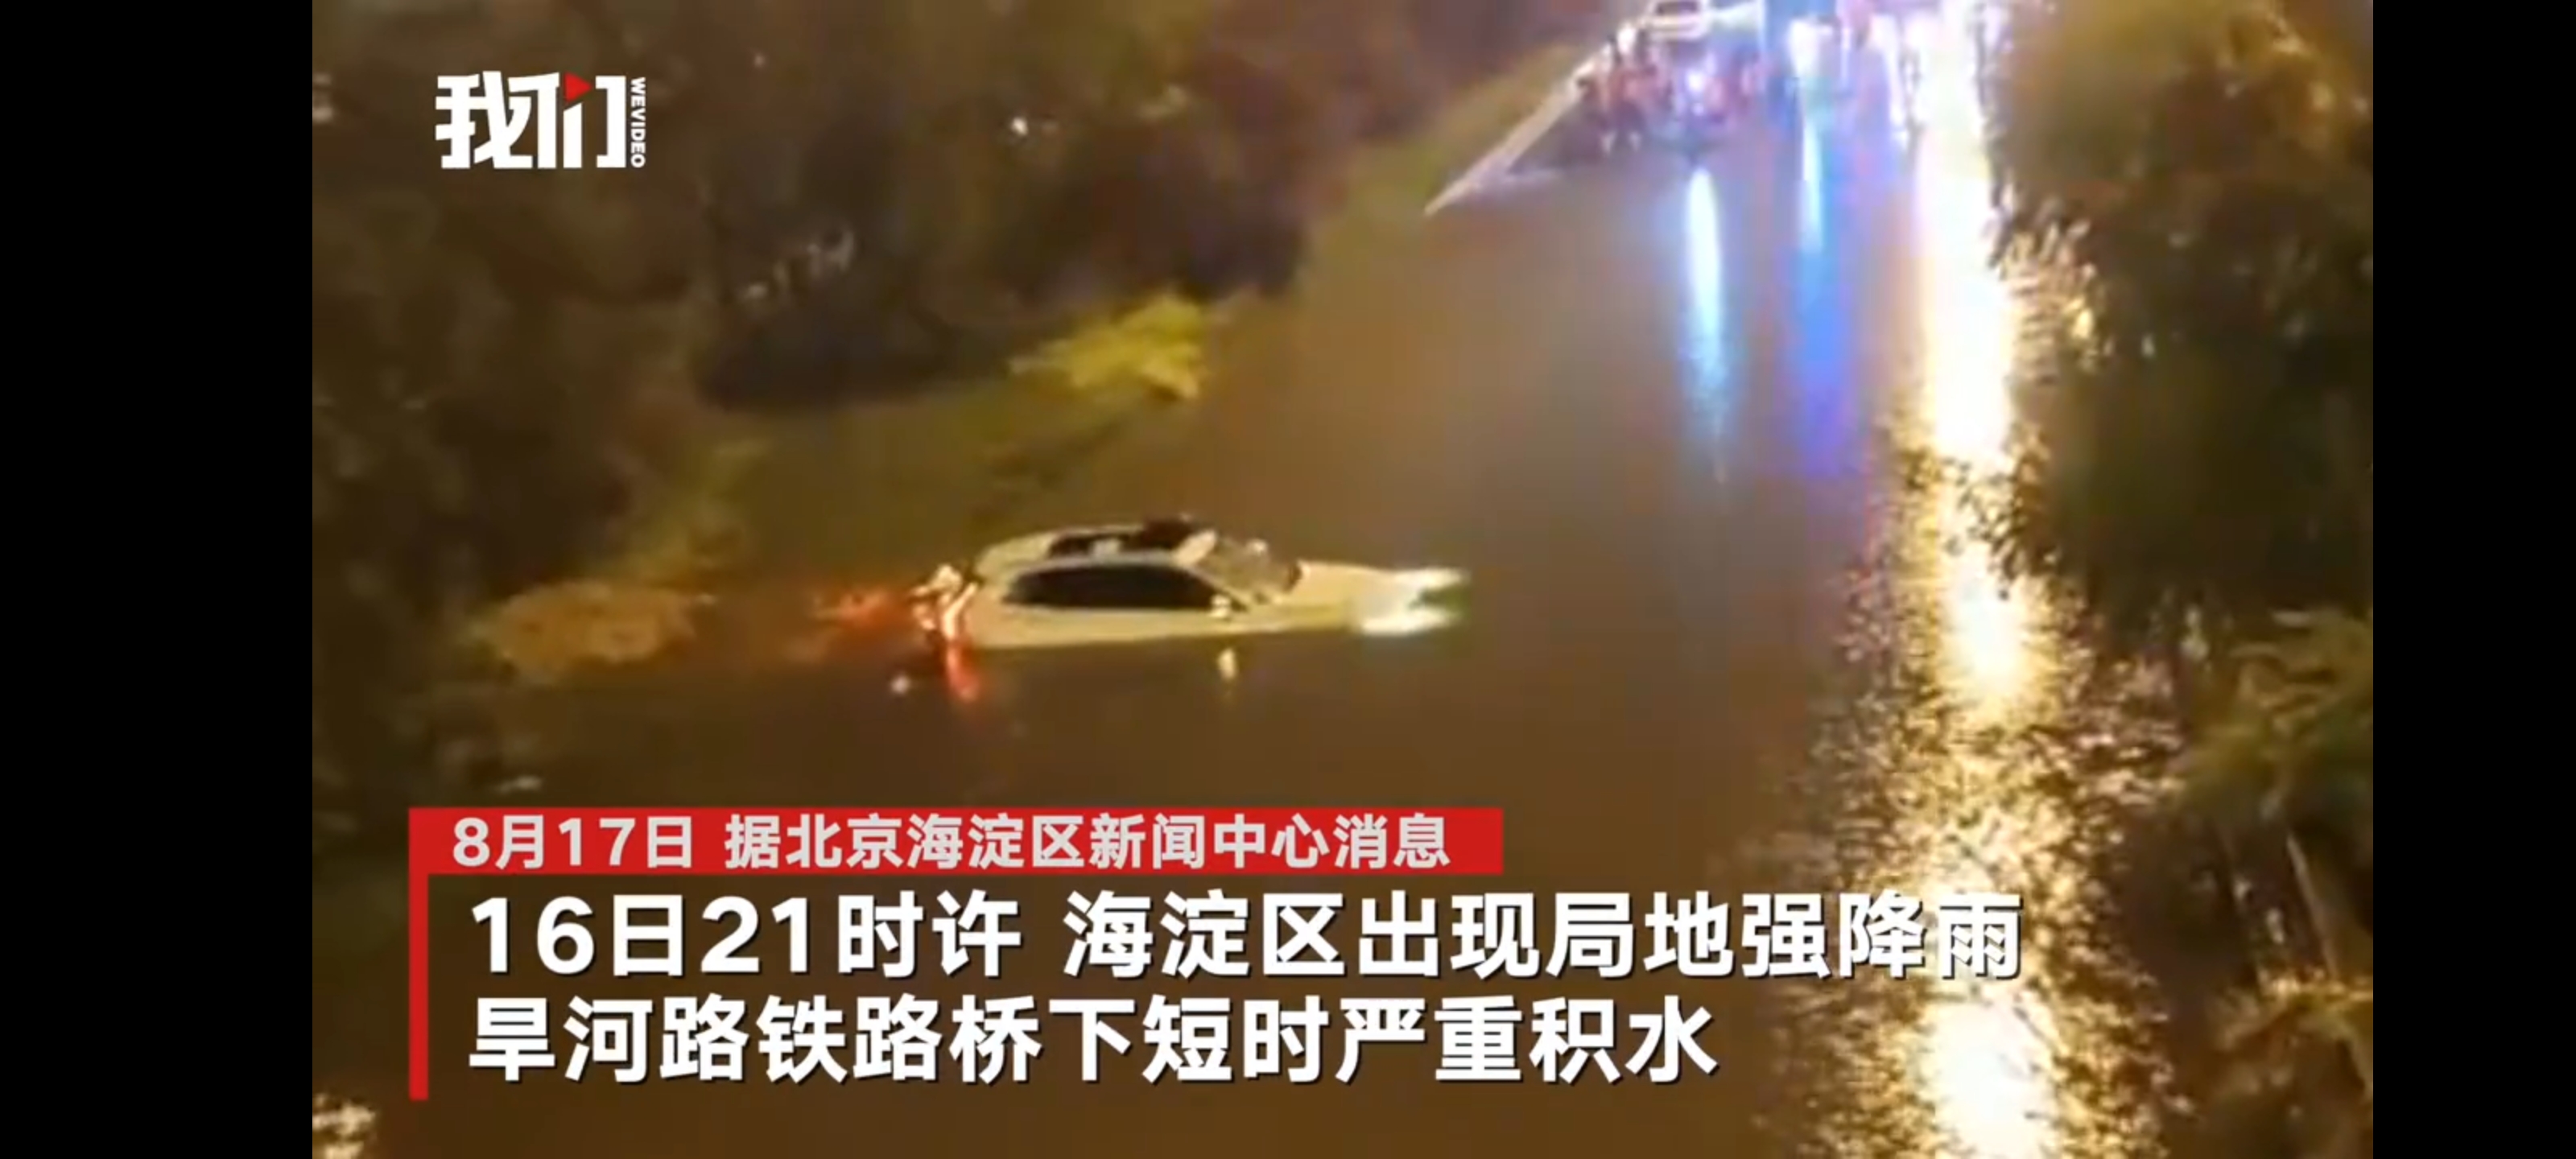 北京铁路桥被淹车救援者：6人救援40分钟，被困者救出时无呼吸